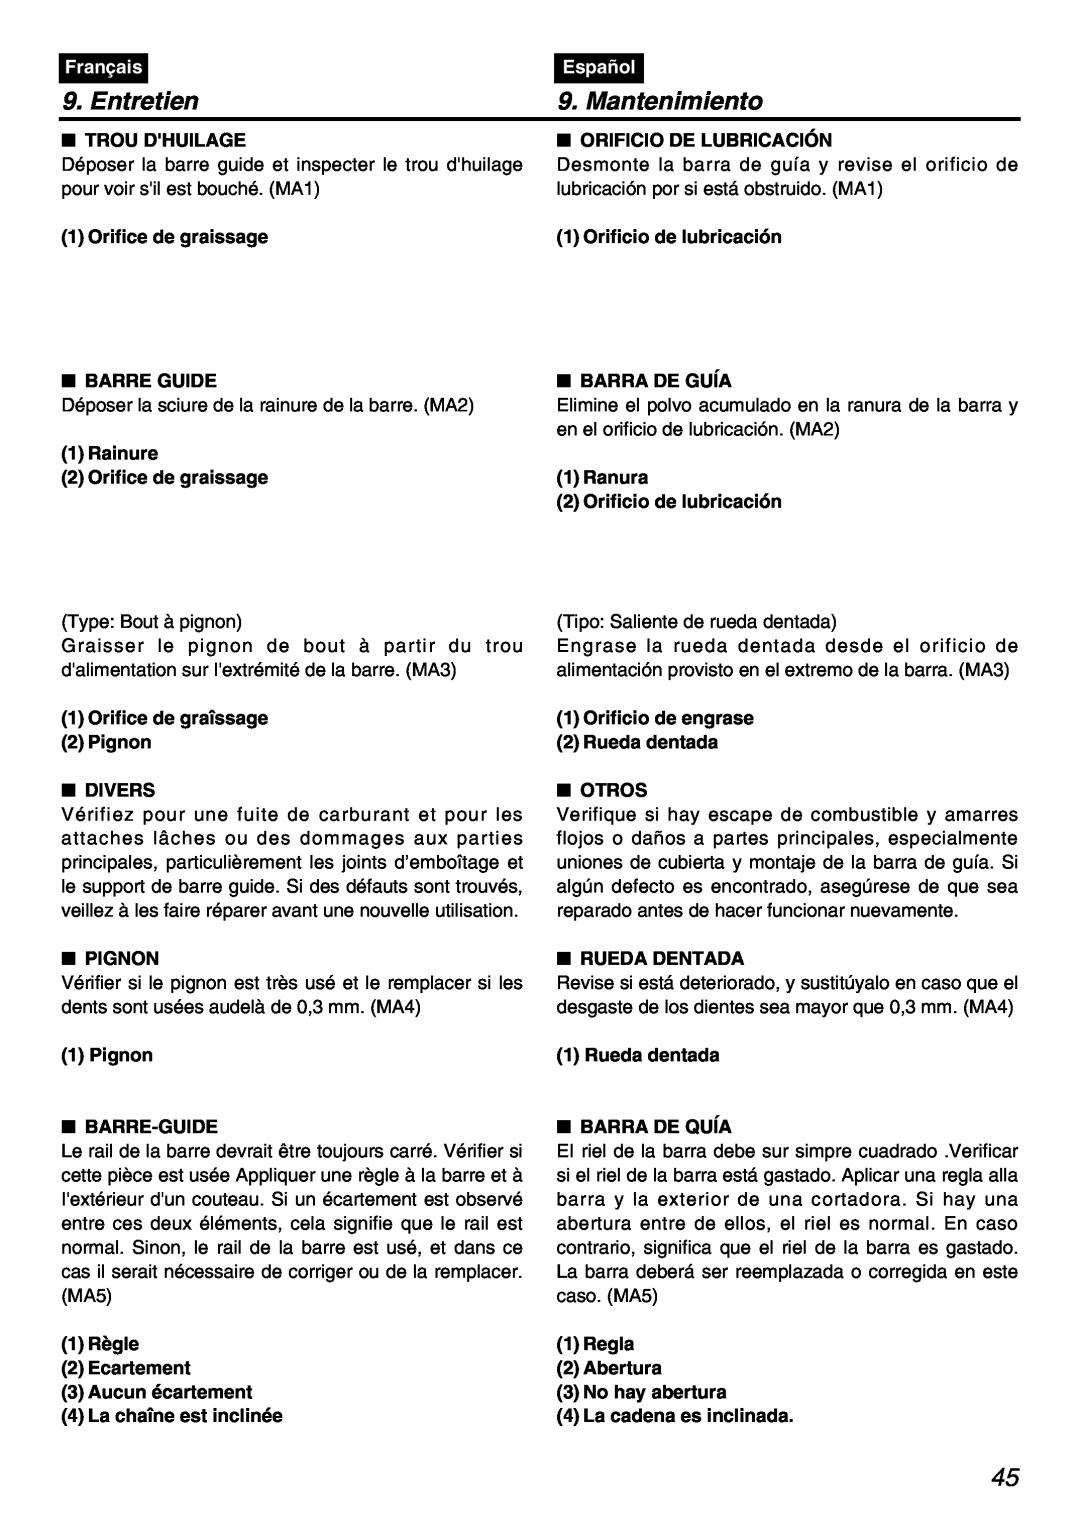 Zenoah PSZ2401 manual Mantenimiento, Trou Dhuilage, Orificio De Lubricación, Entretien, Français, Español 